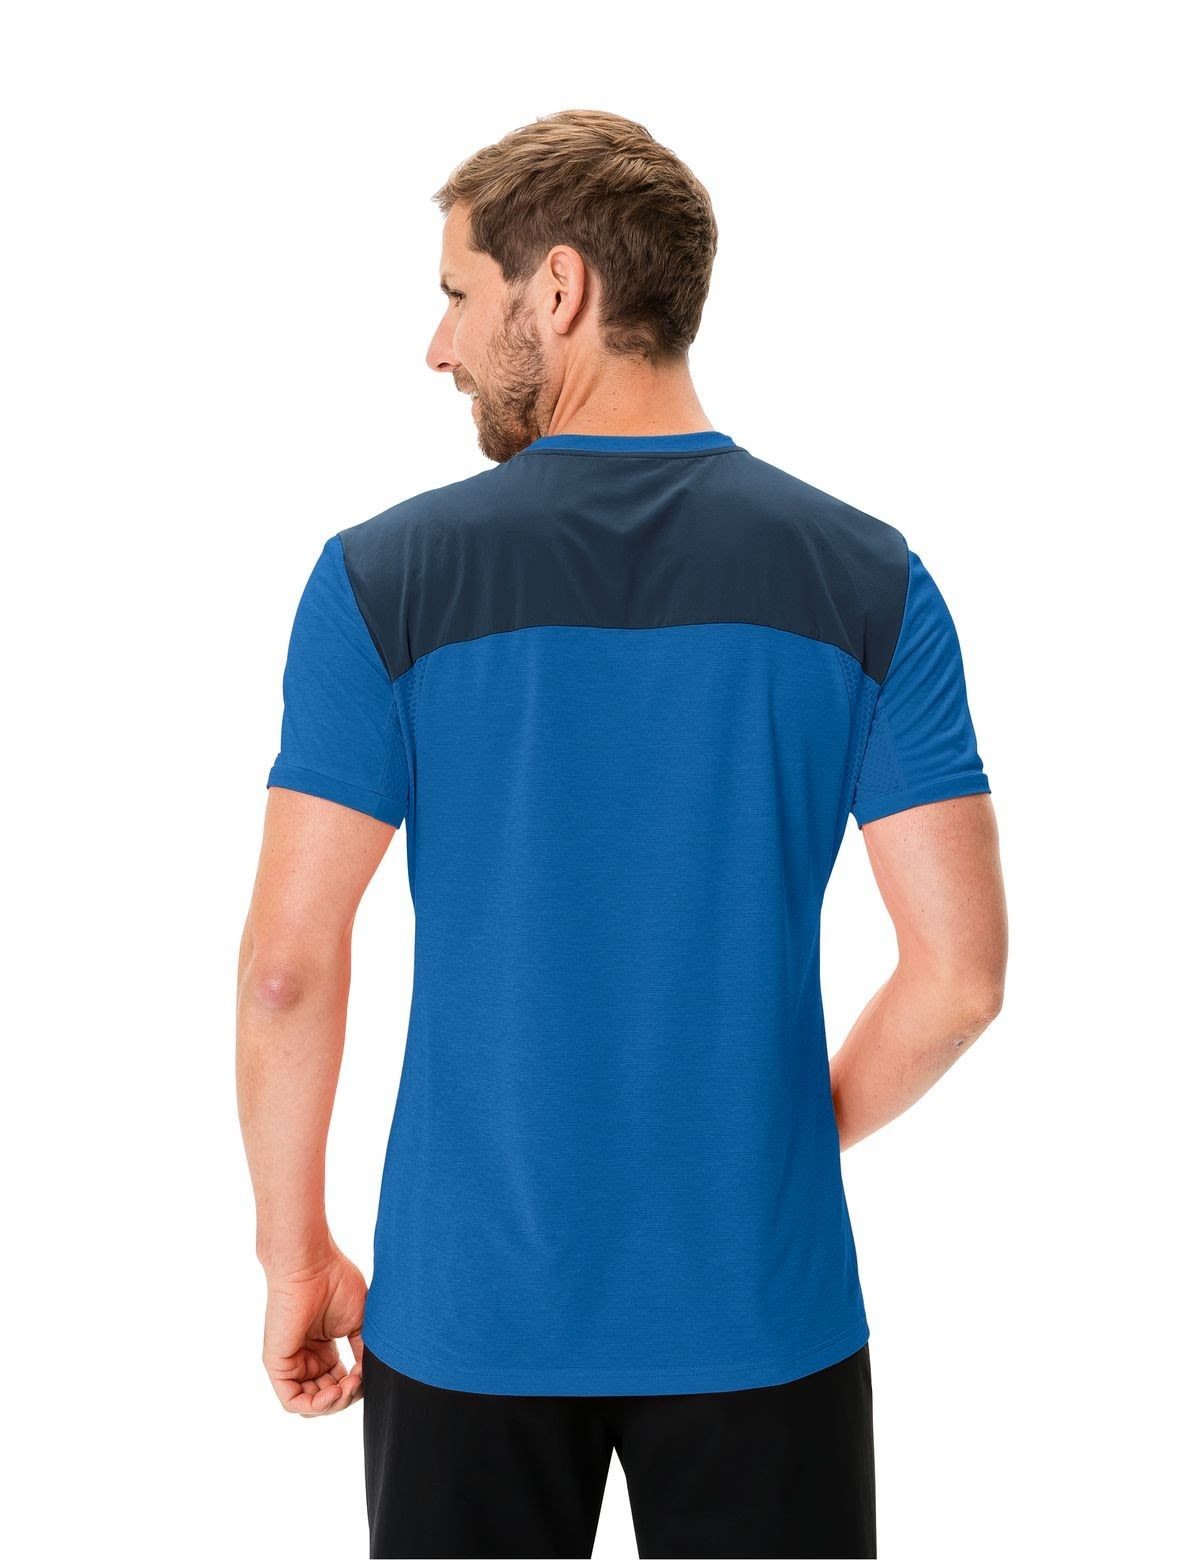 Kurzarm-Shirt VAUDE Mens T-Shirt T-shirt Signal Iii Herren Vaude Scopi Blue